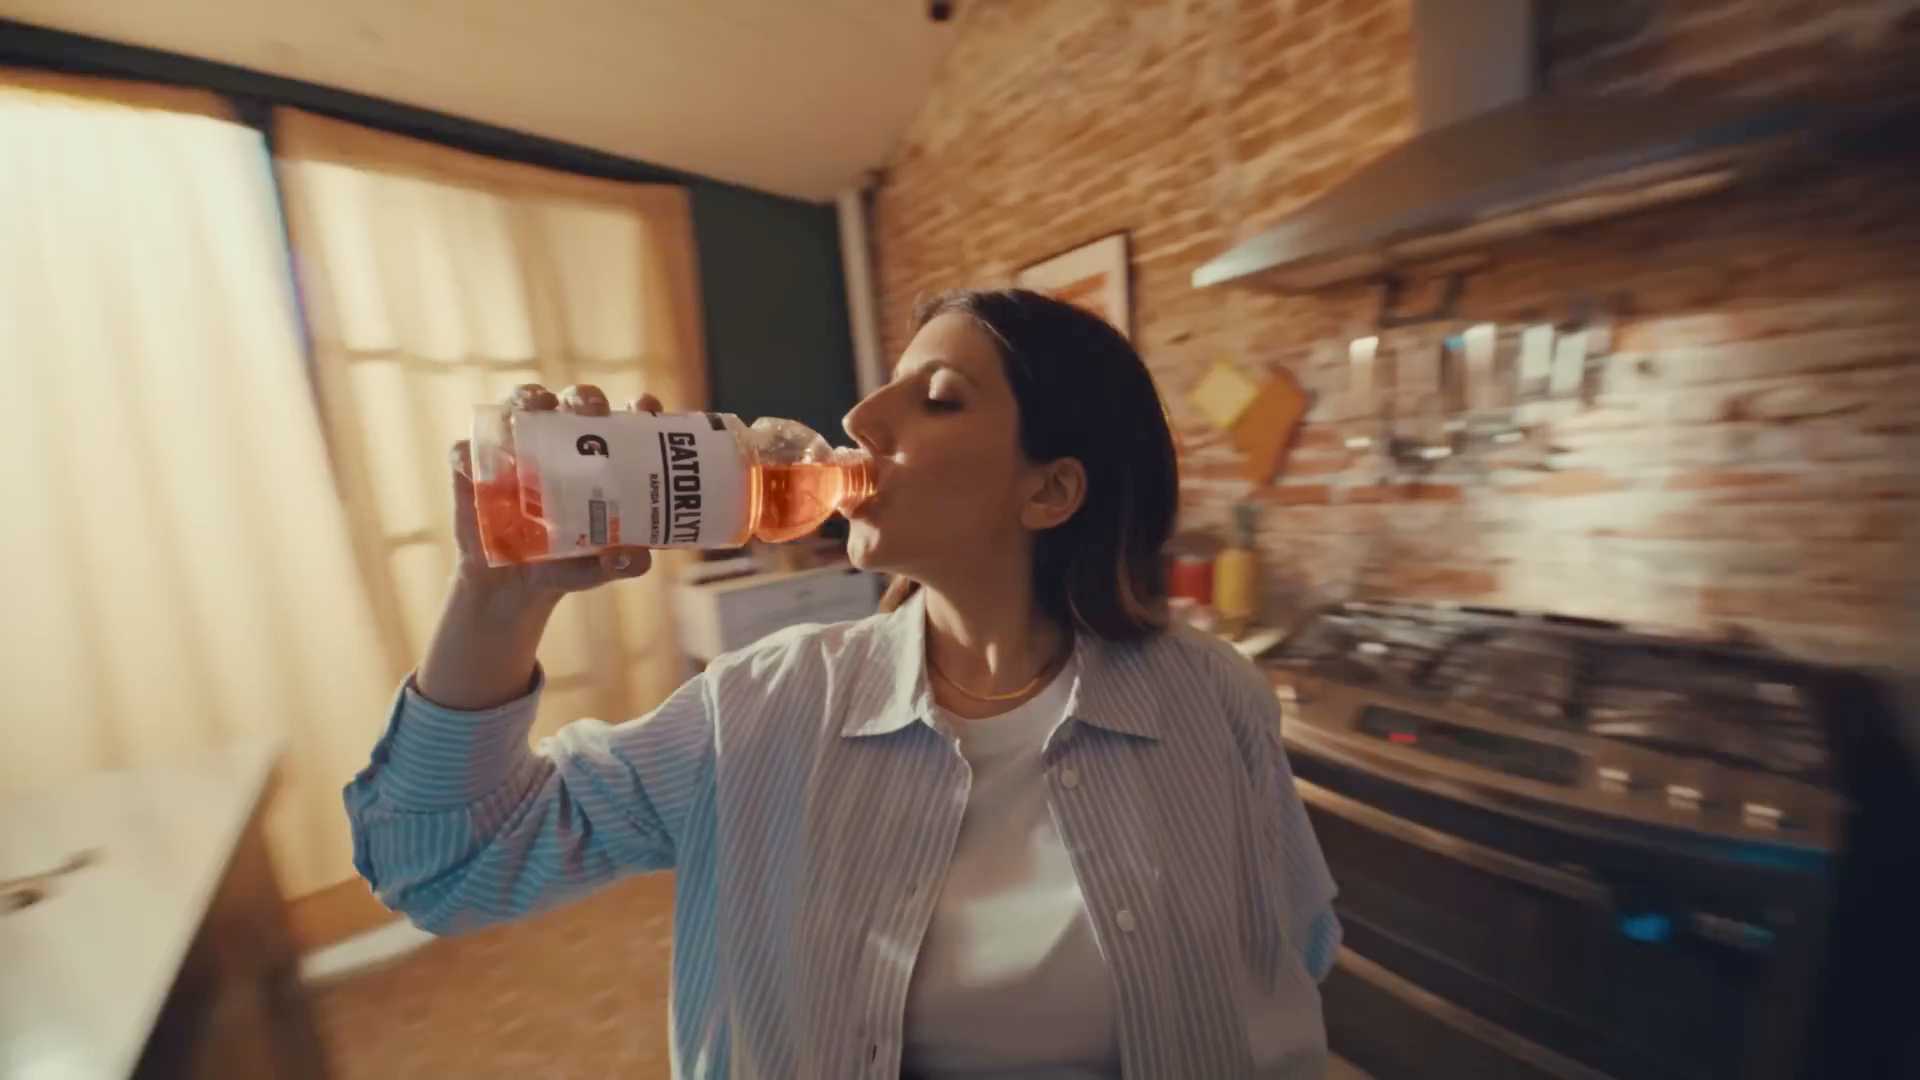 墨西哥饮料广告《这运镜我给满分》